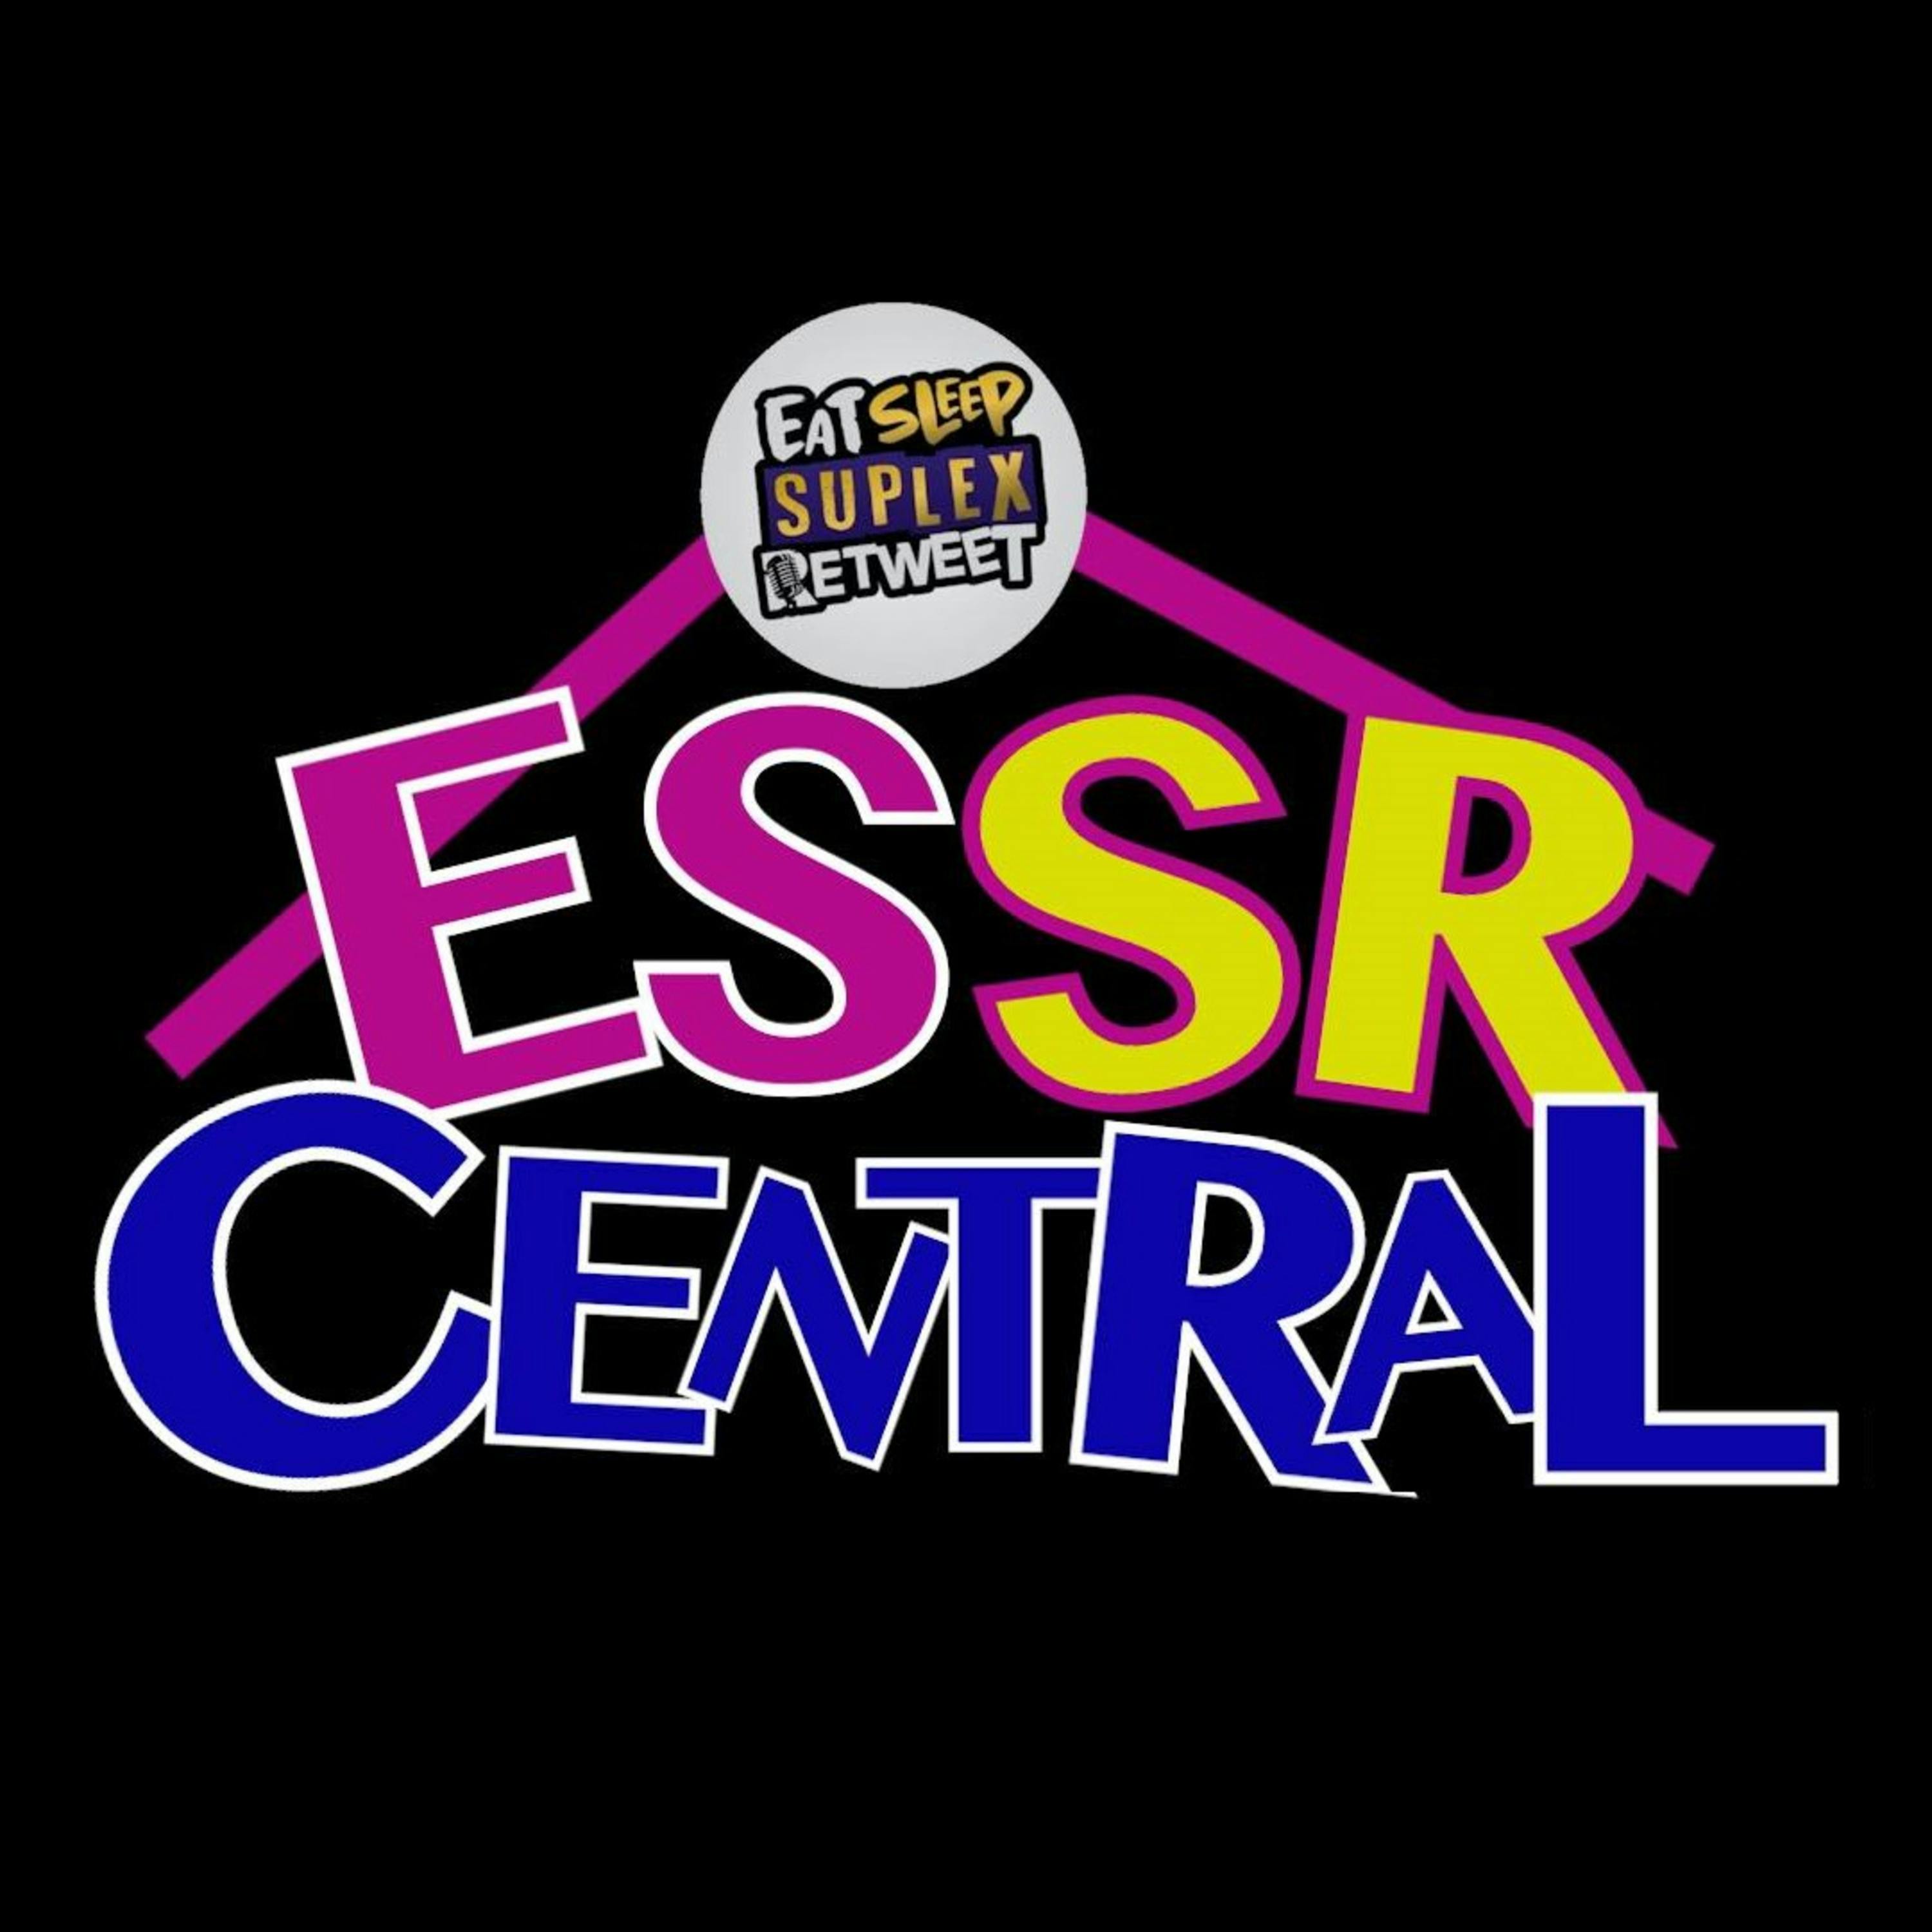 ESSR Central #032 - Future Endeavour